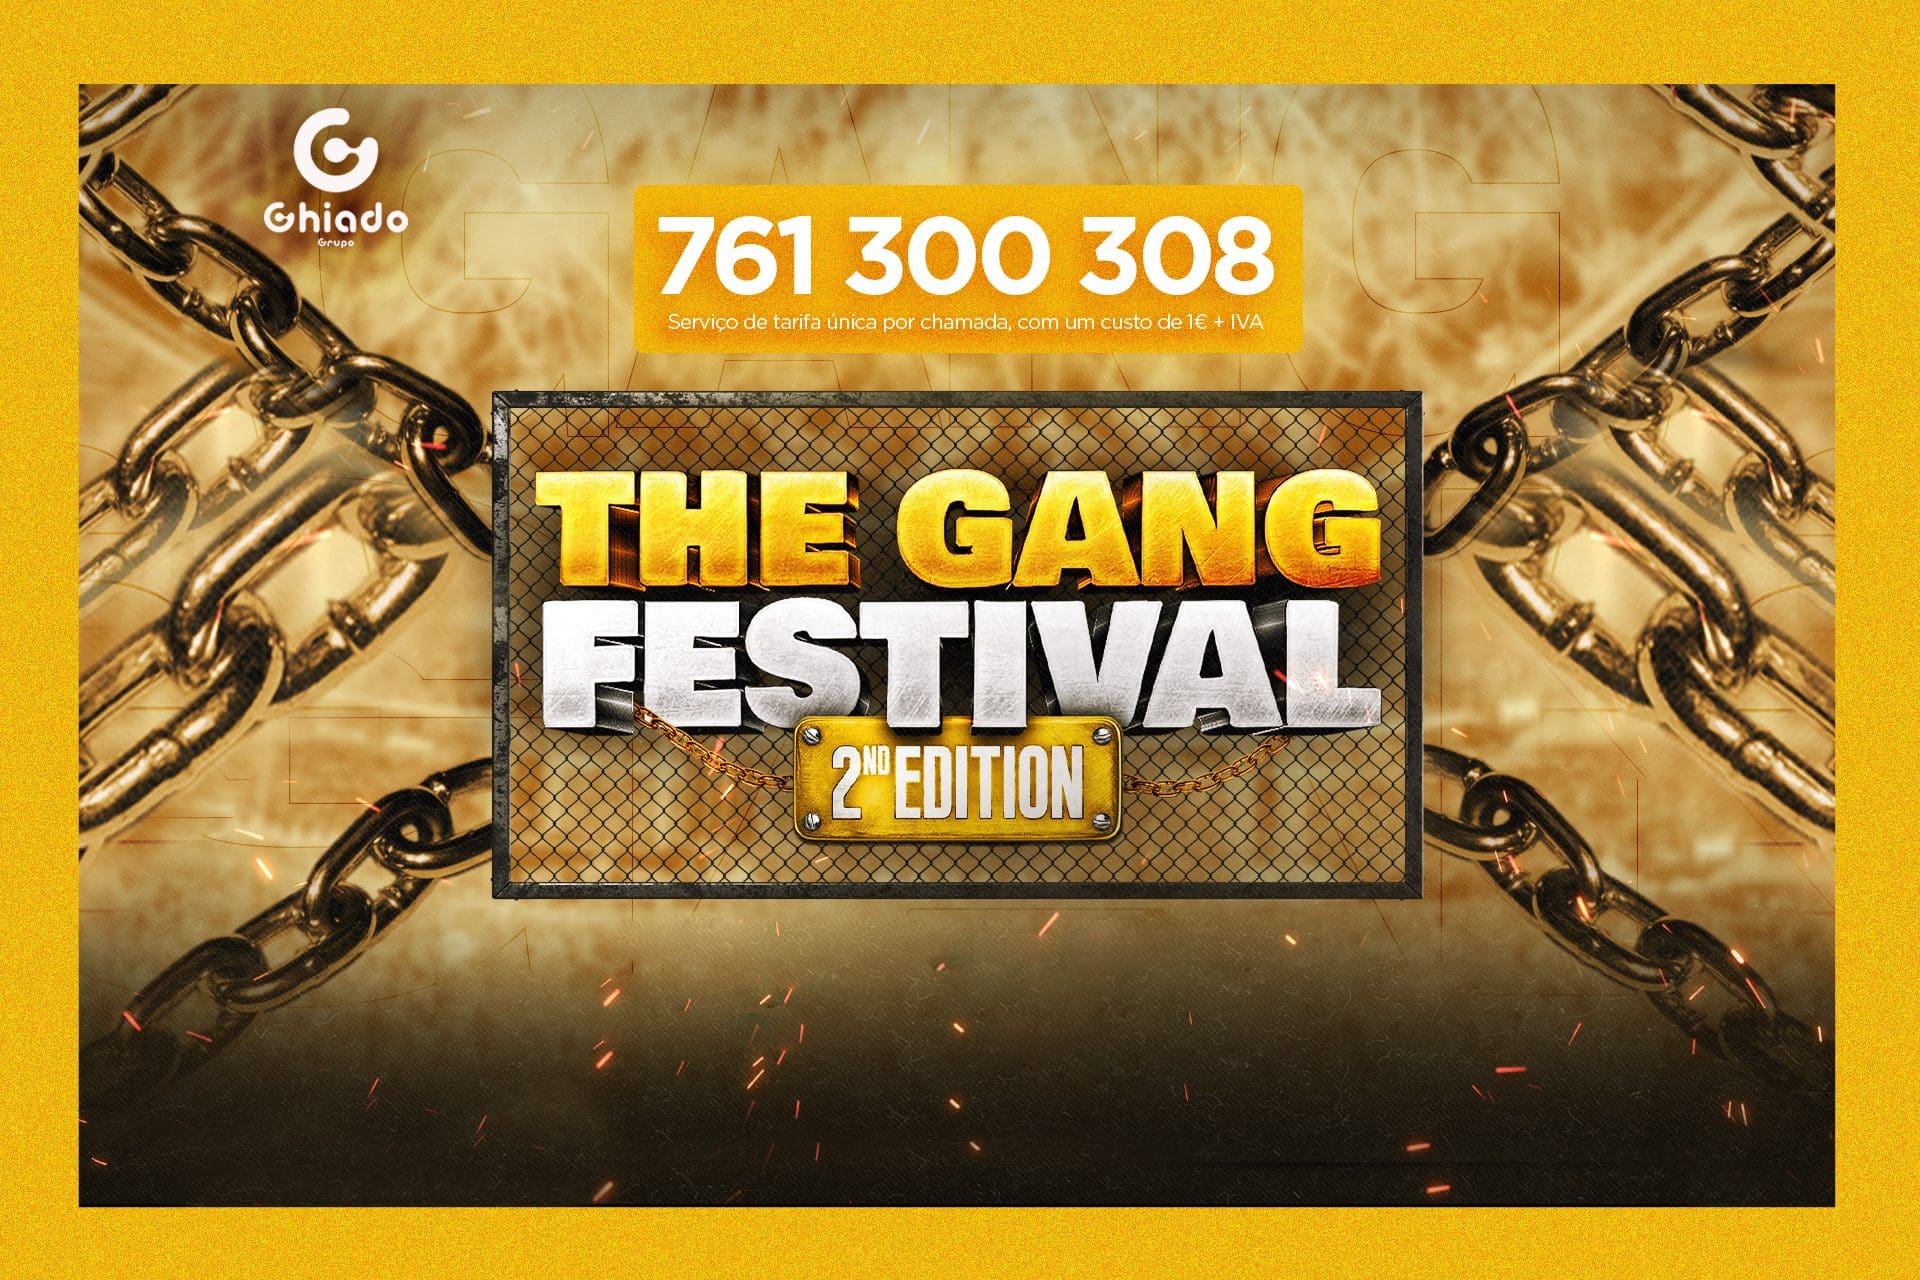 Vá ao The Gang Festival com a Record TV Europa